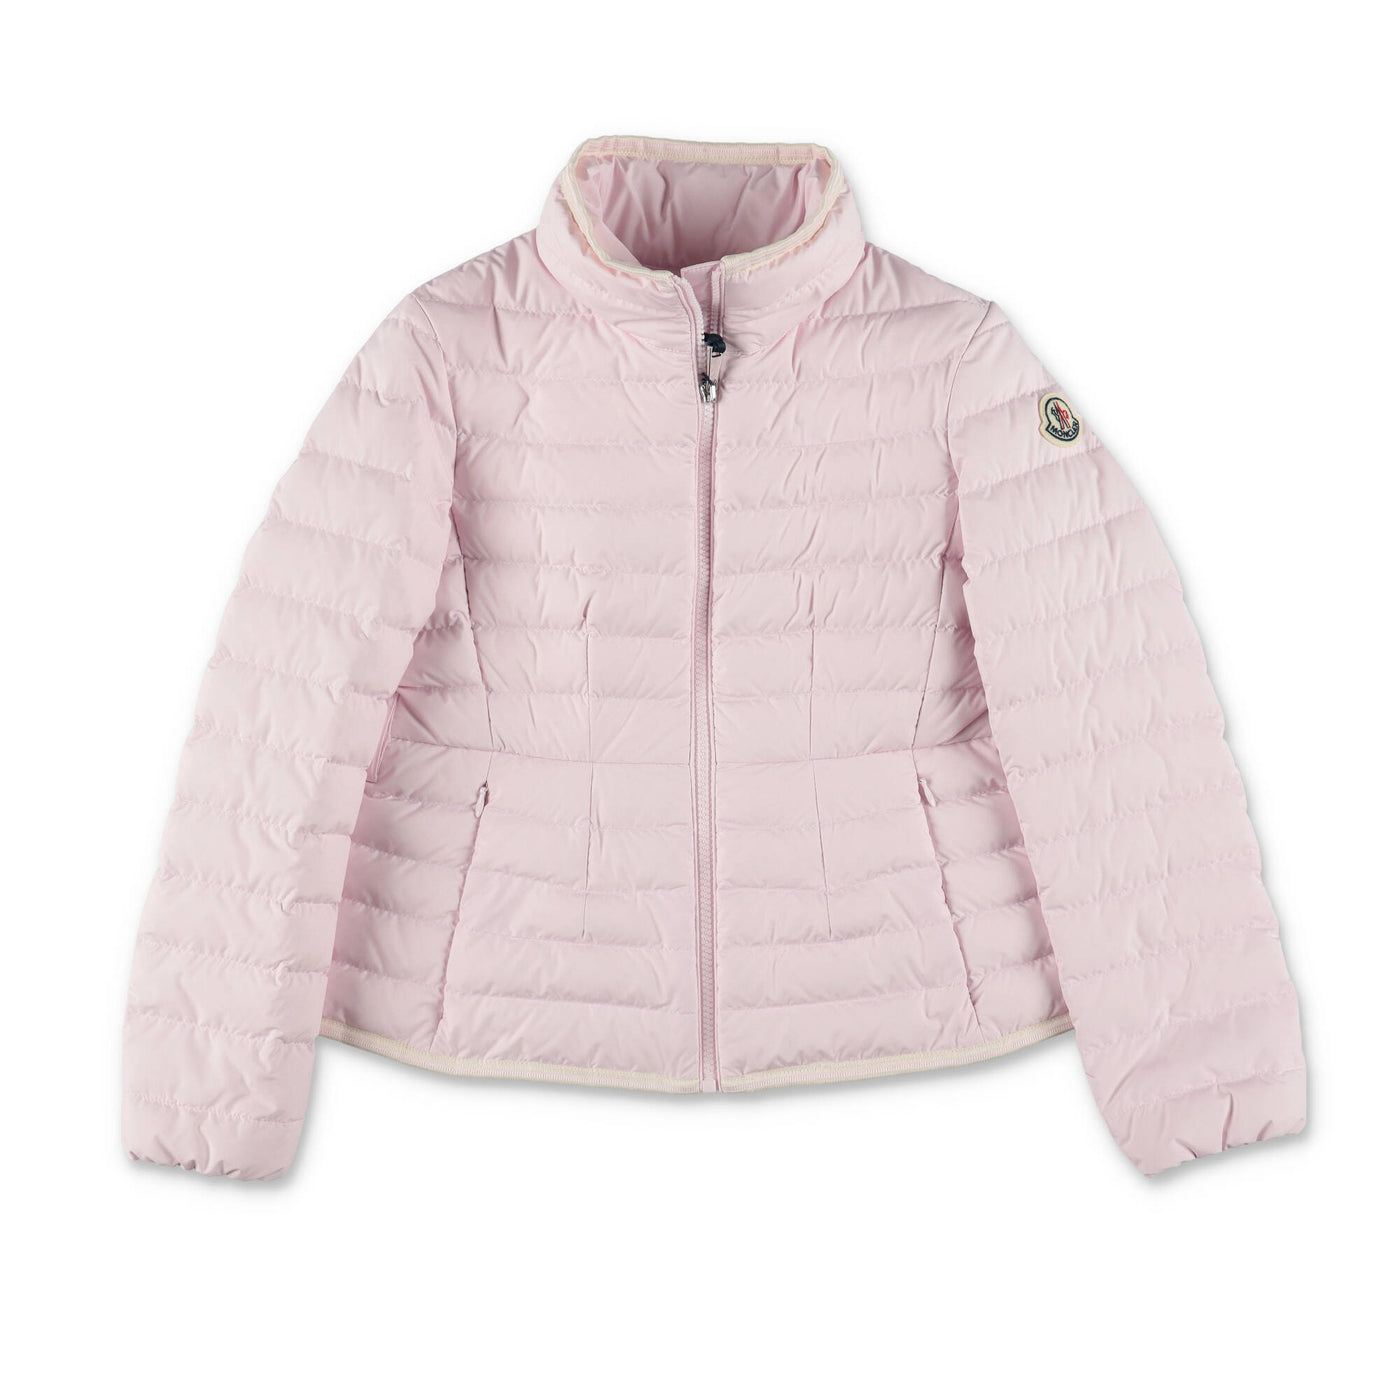 DINKA pink nylon girl MONCLER jacket